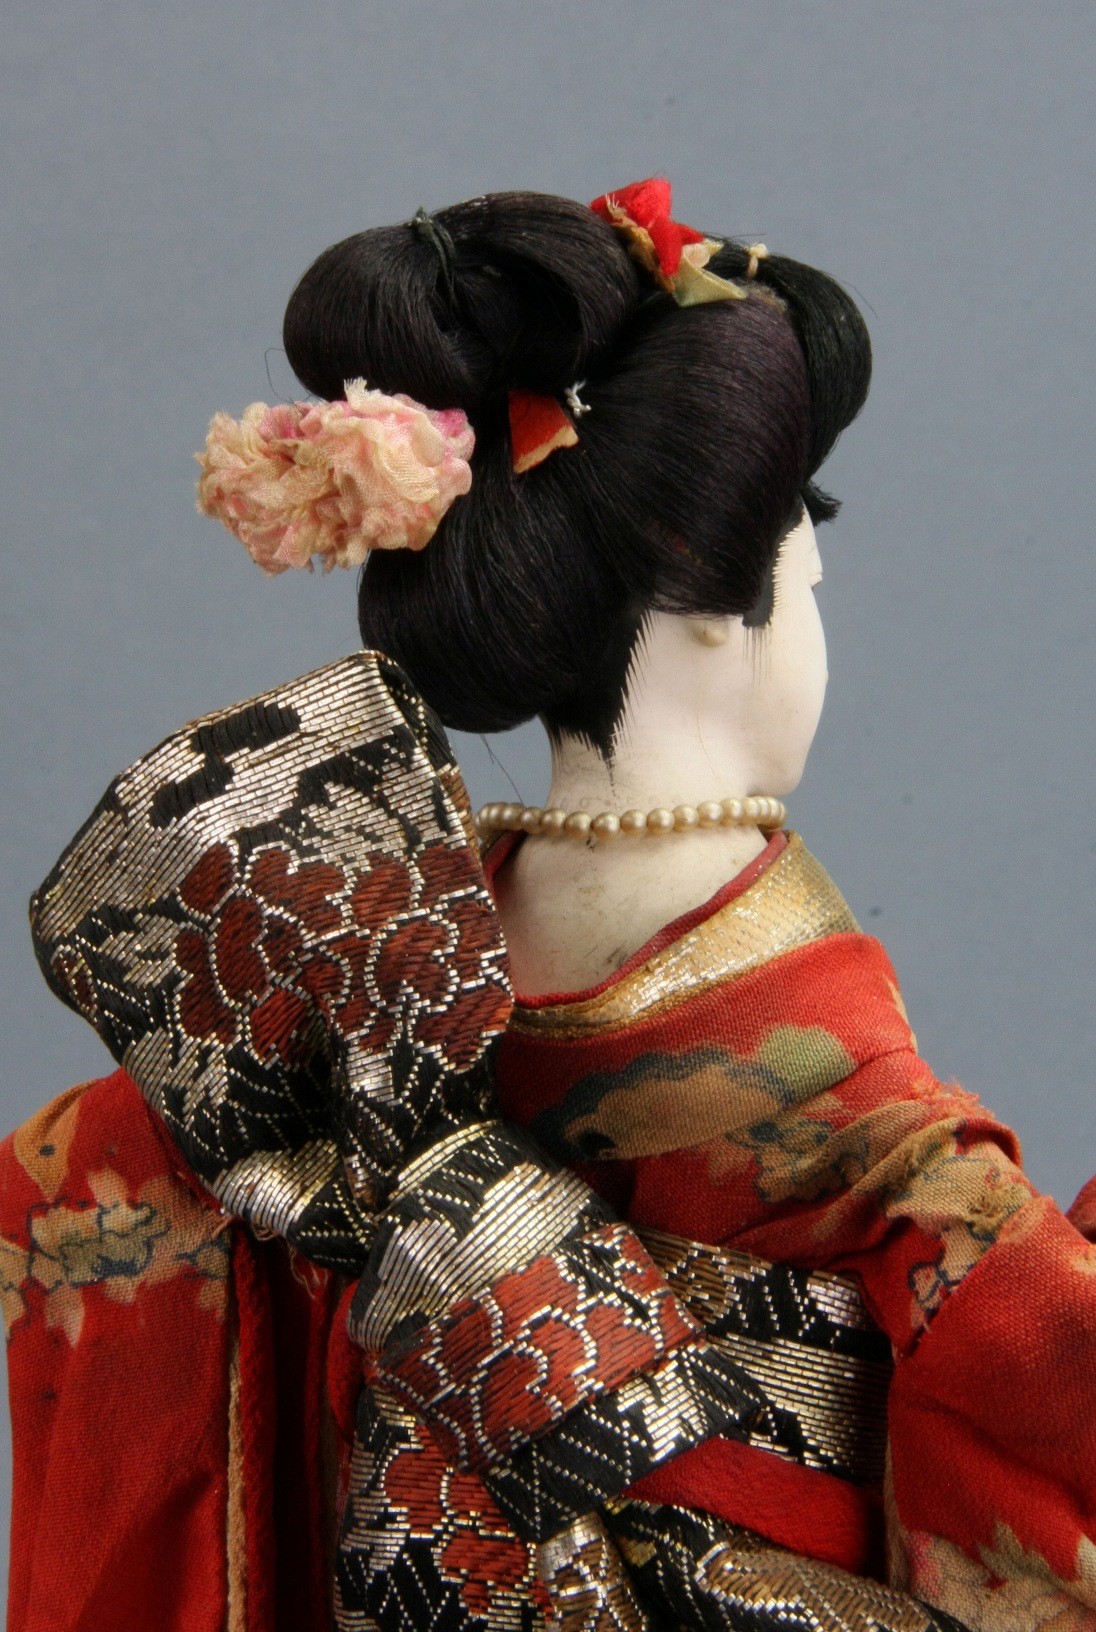 Lalka ishō ningyō. Maiko, geisha praktykantka, z fantazyjnie zawiązanym obi. Koniec XIX w. Ze zbiorów Muzeum Lalek w Pilźnie, fot. Włodzimierz Bohaczyk (źródło: materiały prasowe organizatora)